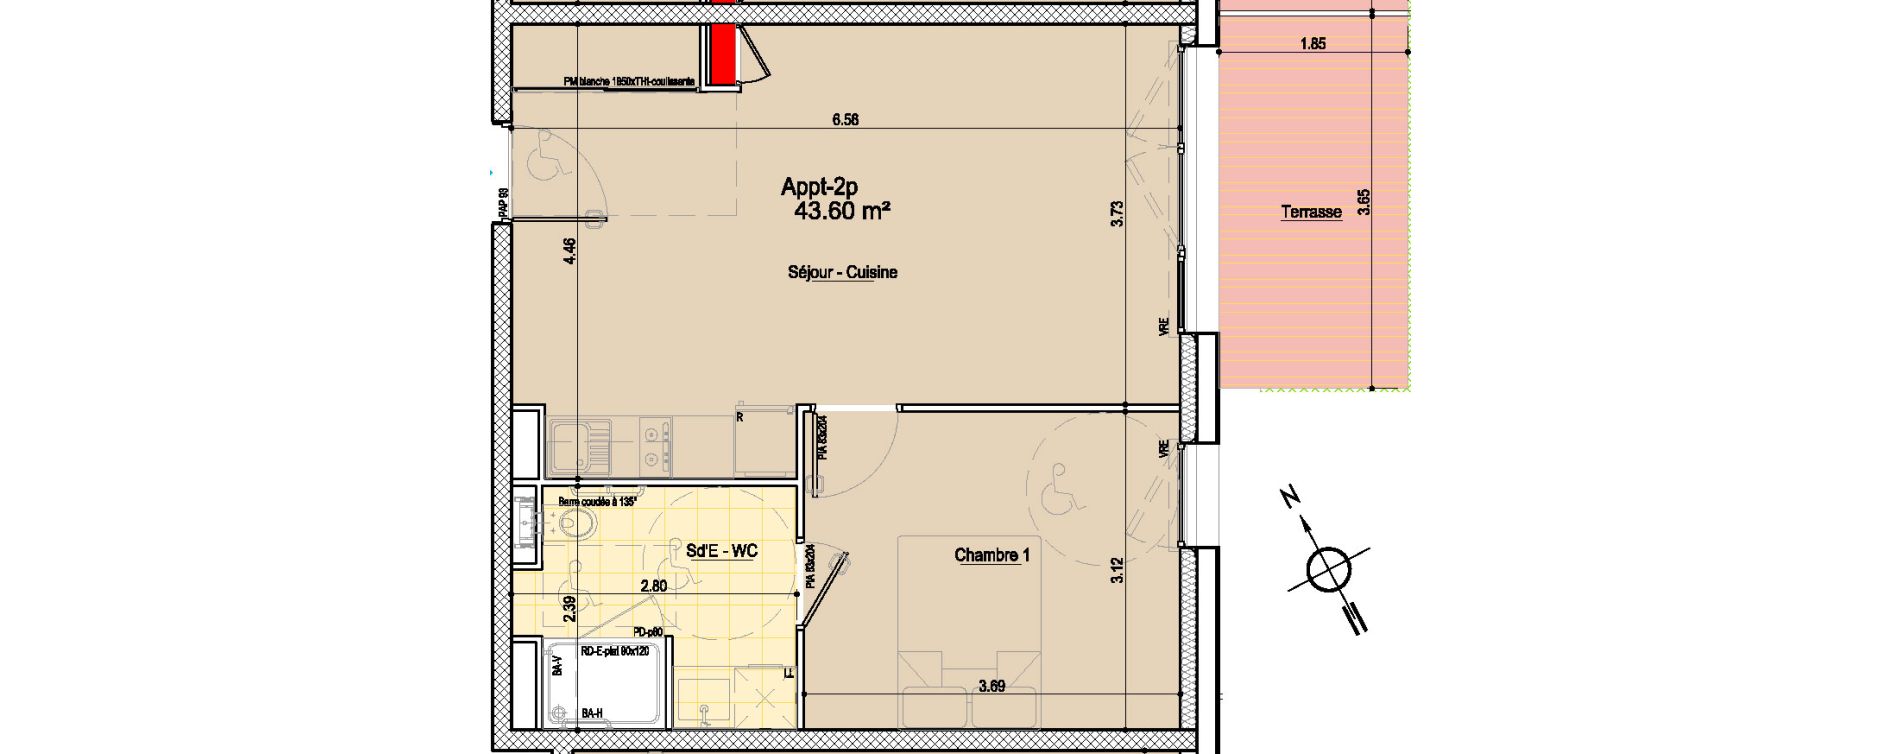 Appartement T2 bis de 43,60 m2 aux Sables-D'Olonne Le chateau d olonne